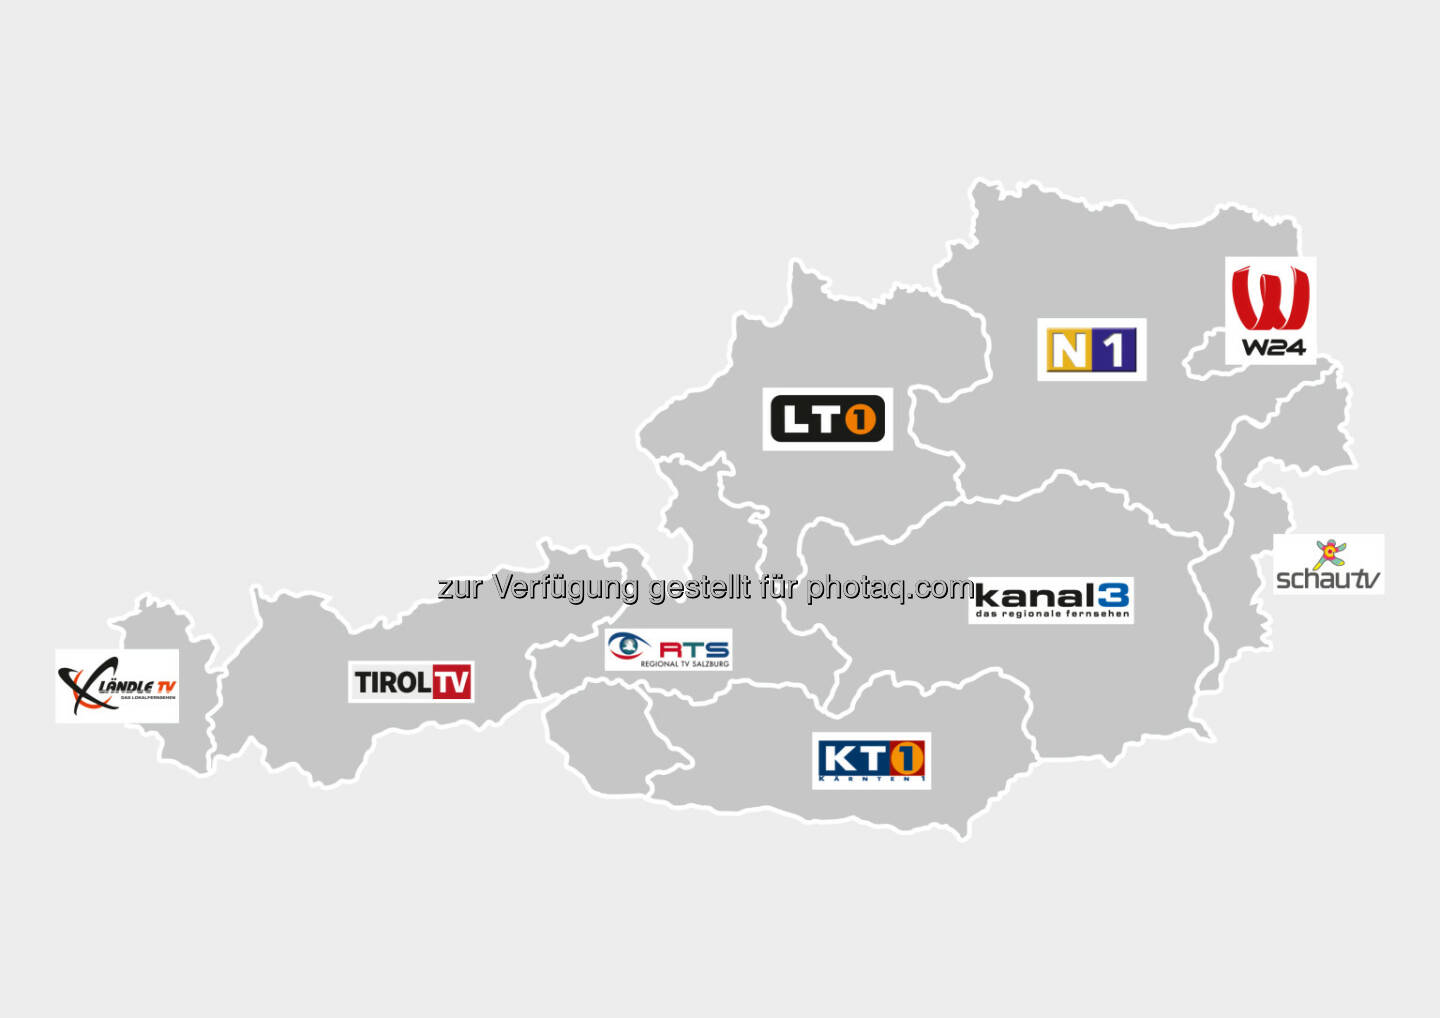 Grafik : R9 - die Regionalsender : Der Kanal R9 Österreich fasst mehrere lokale und regionale TV-Sender aus allen neun österreichischen Bundesländern unter einem Dach zusammen, darunter W24, Ländle TV, Tirol TV, RTS, LT1, KT1, Kanal3, SchauTV sowie N1 : Fotocredit: R9